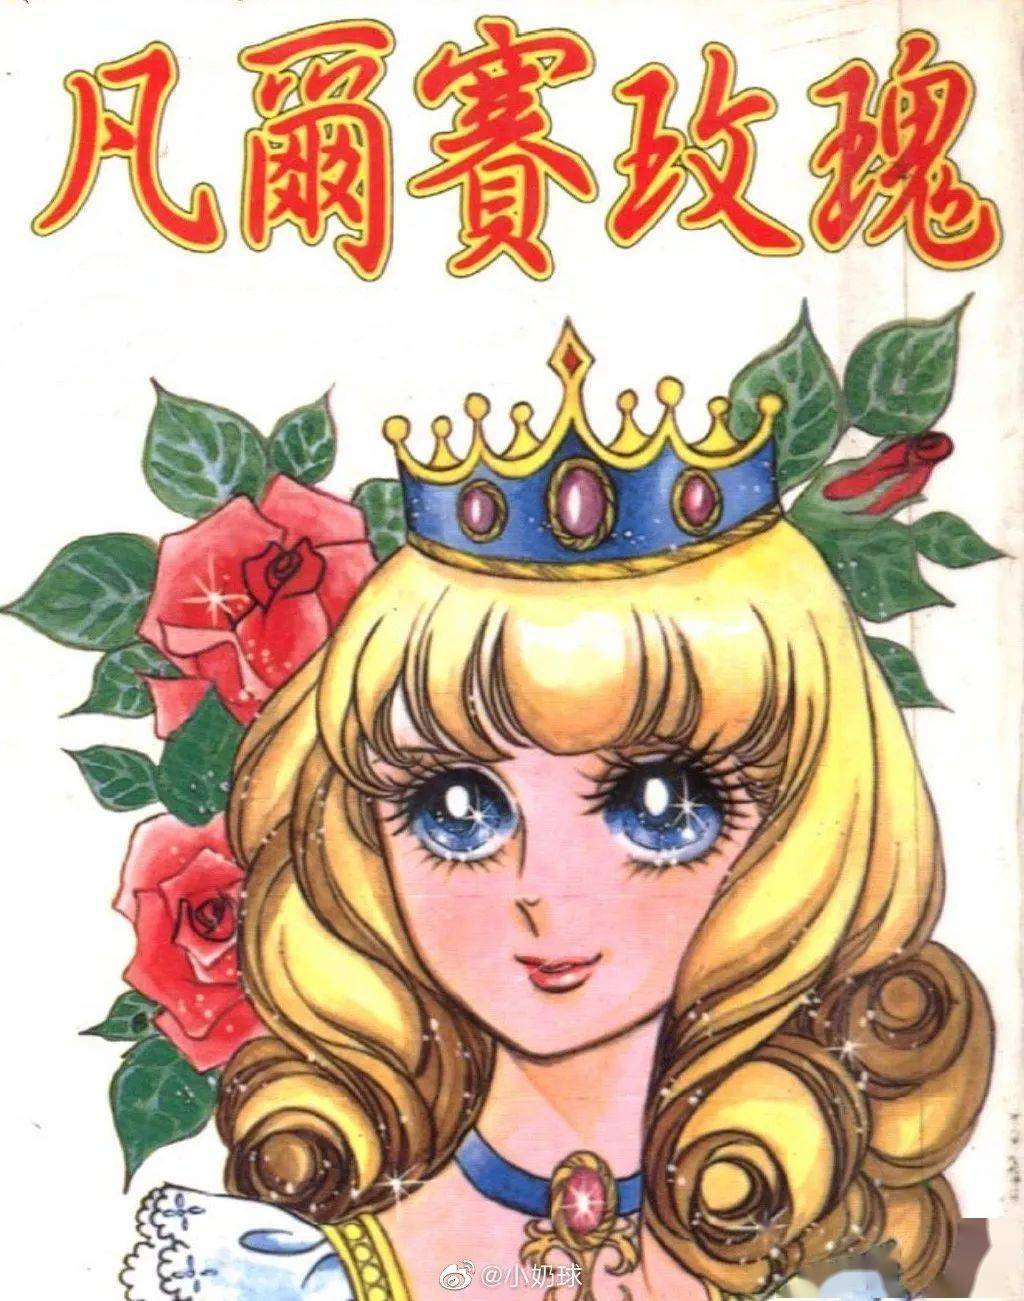 凡尔赛象征法国贵族,70 年代日本少女漫画《凡尔赛玫瑰》是凡尔赛